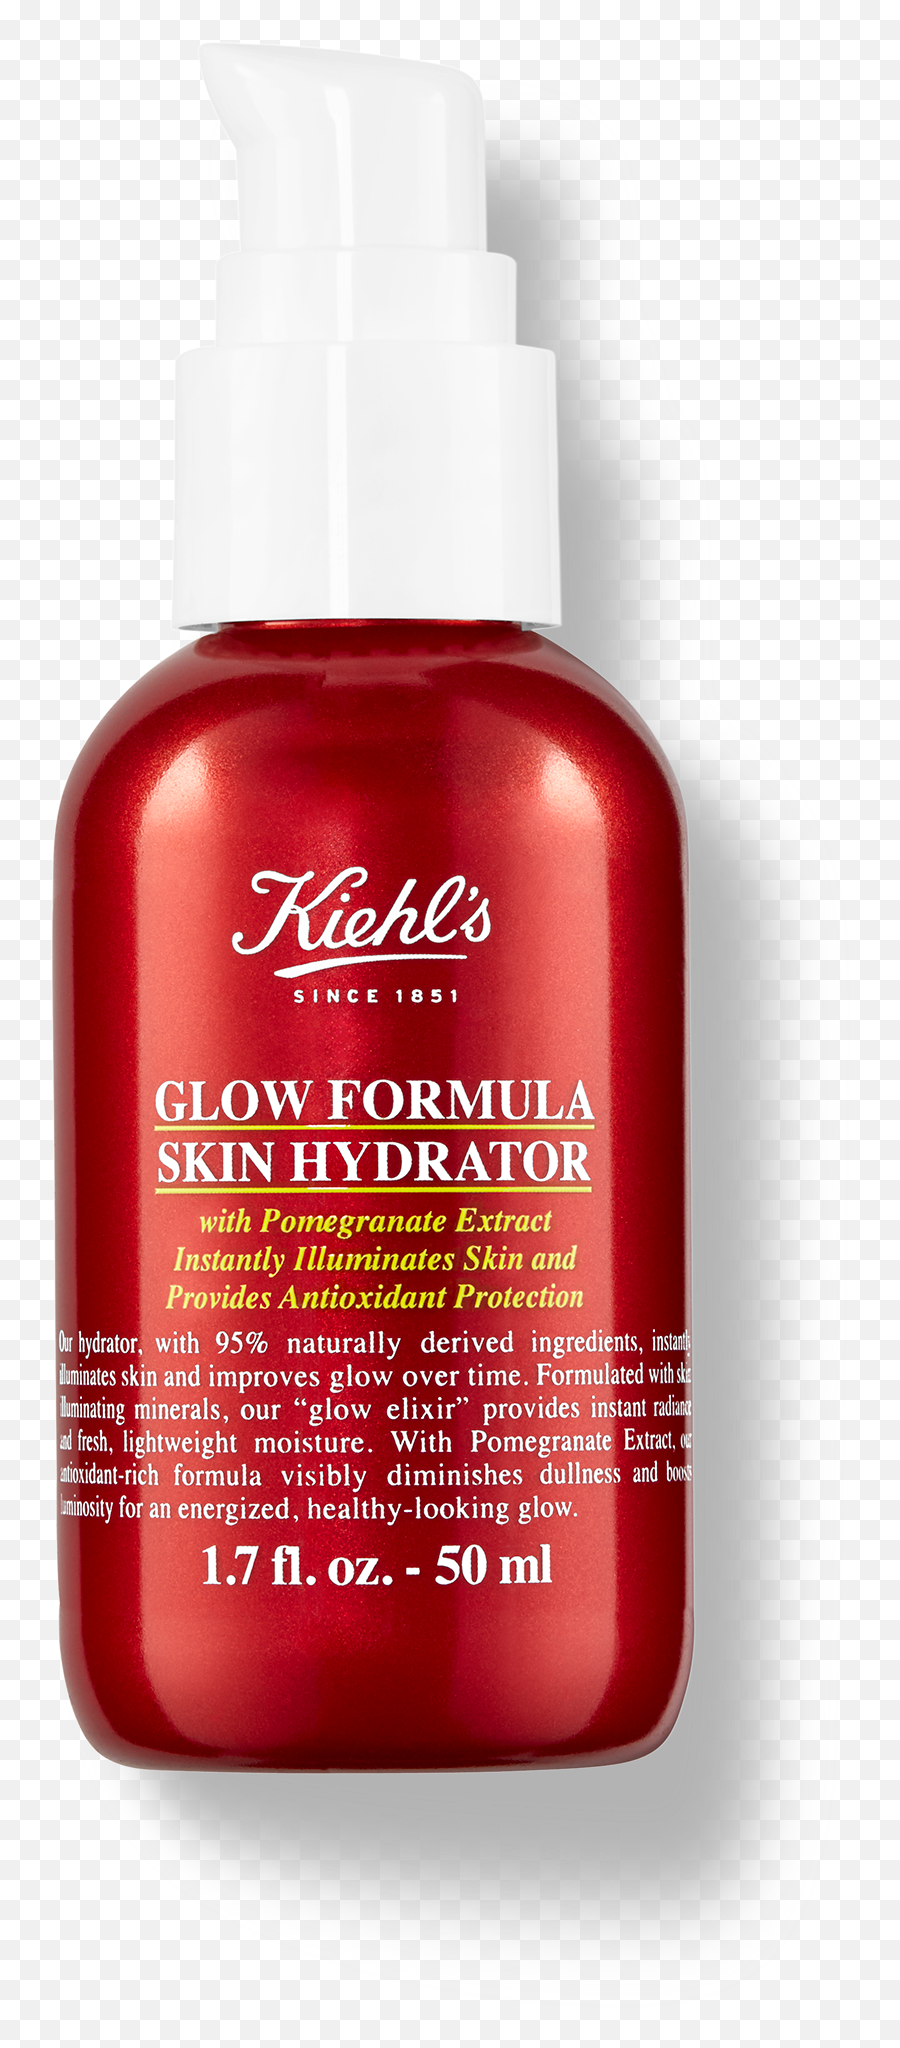 Glow Formula Skin Hydrator - Kiehls Glow Emoji,Transparent Skin